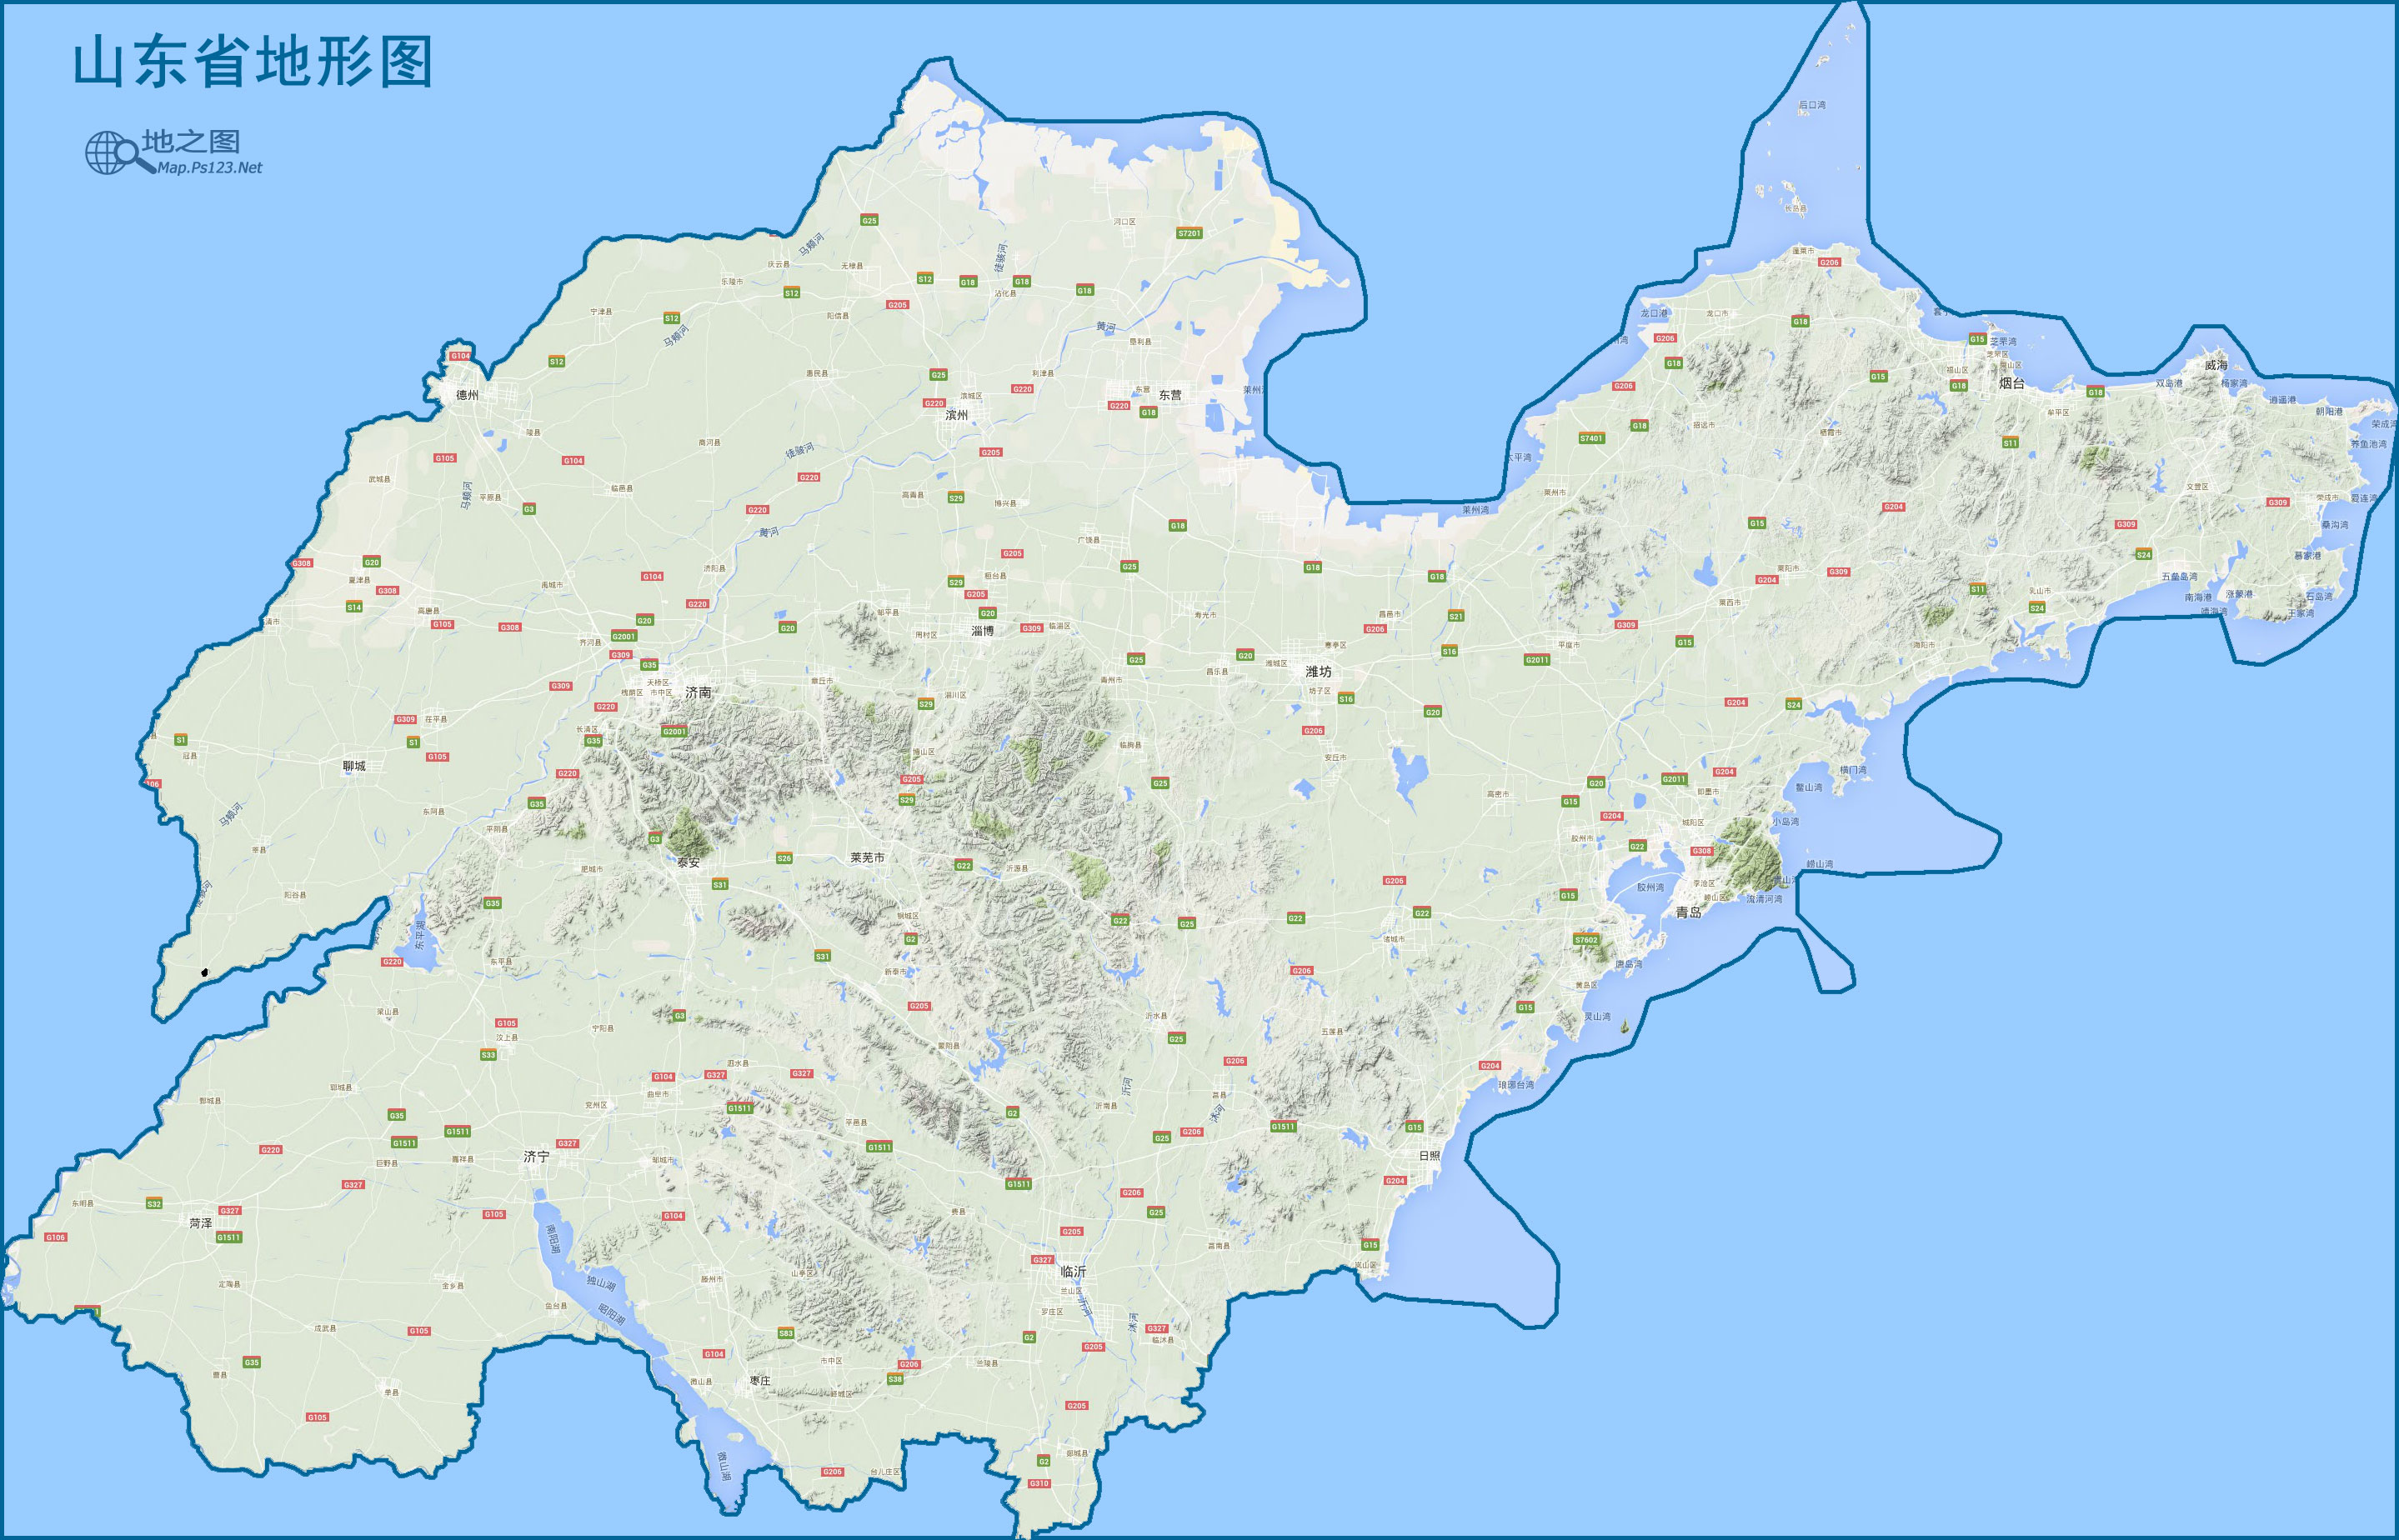 中国地图 山东 >> 山东地图(地形图)  分类: 山东  更新:2015-8-11图片